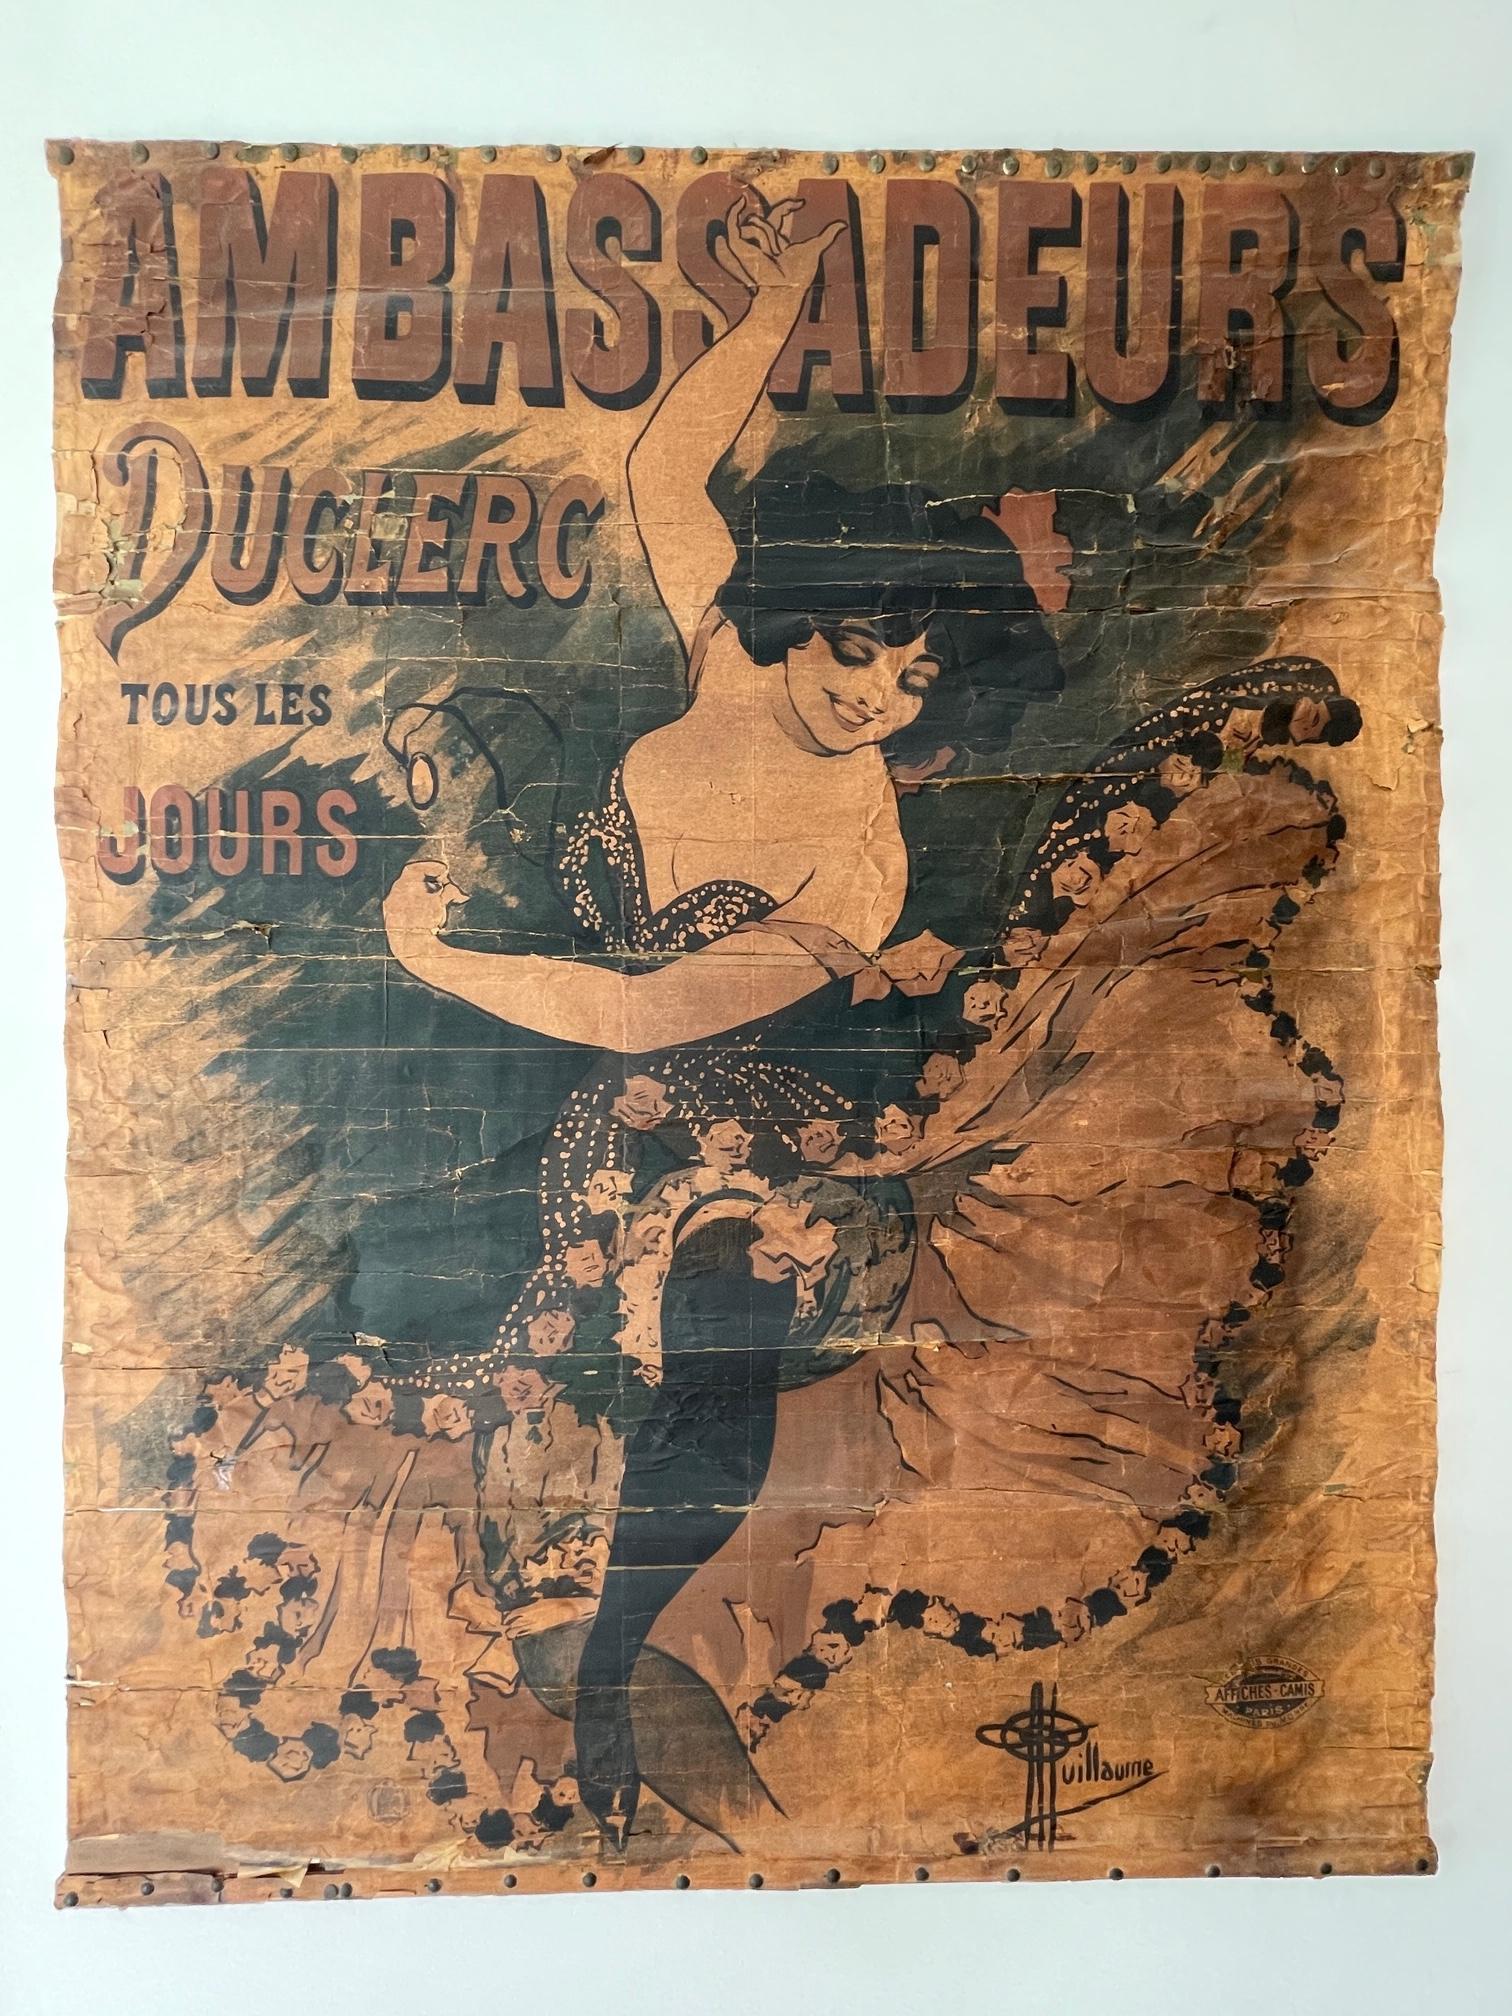 1894 Antique affiche / poster Ambassadeurs Duclerc tous les jours - Guillaume For Sale 1